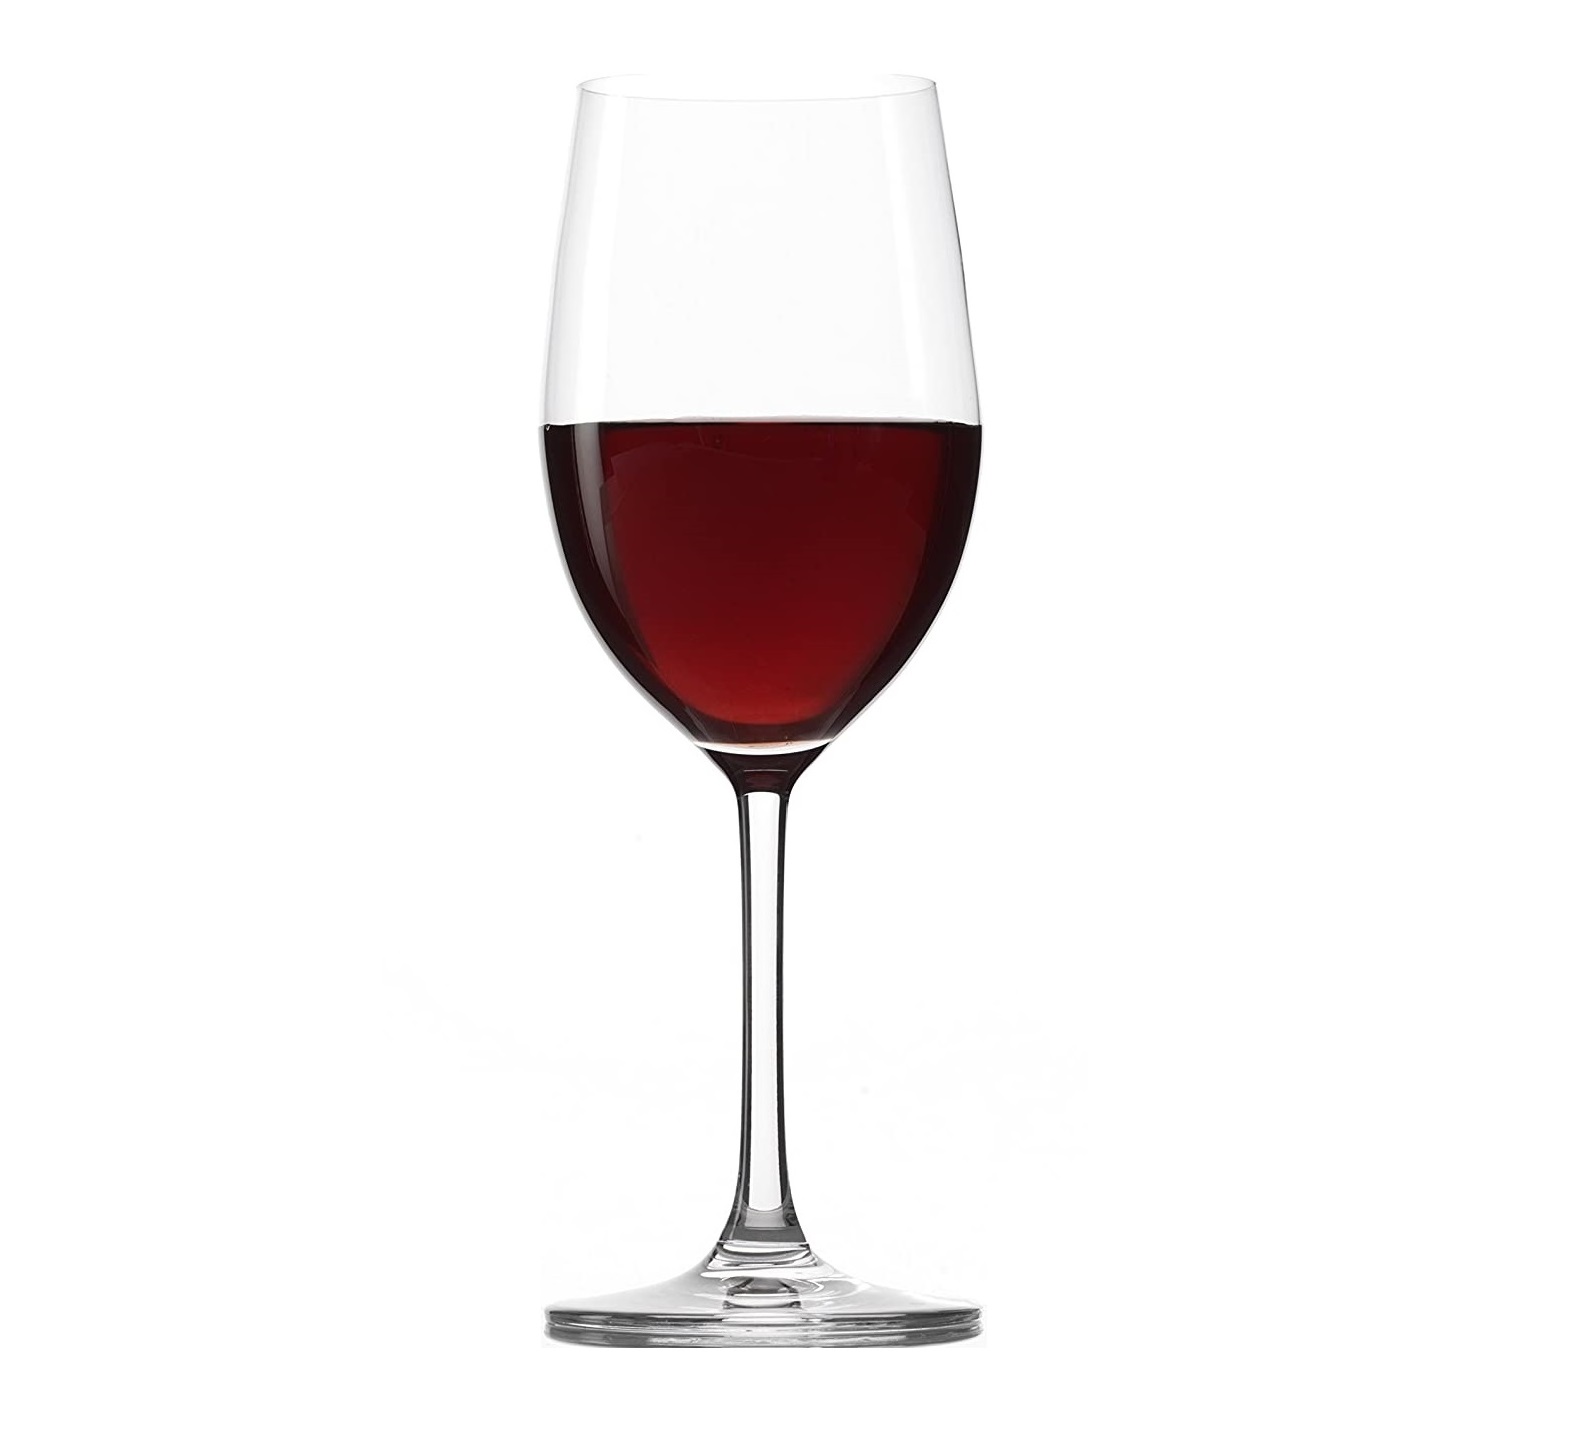 Ly Uống Vang Đỏ Stoelzle Classic Red Wine Glass 448 ml - Thiết Kế Thanh Lịch, Vượt Thời Gian - Thích Hợp Để Thưởng Thức Các Loại Vang Chianti Classico, Chianti Riserva, Montepulciano, Barbera Hay Zweigelt